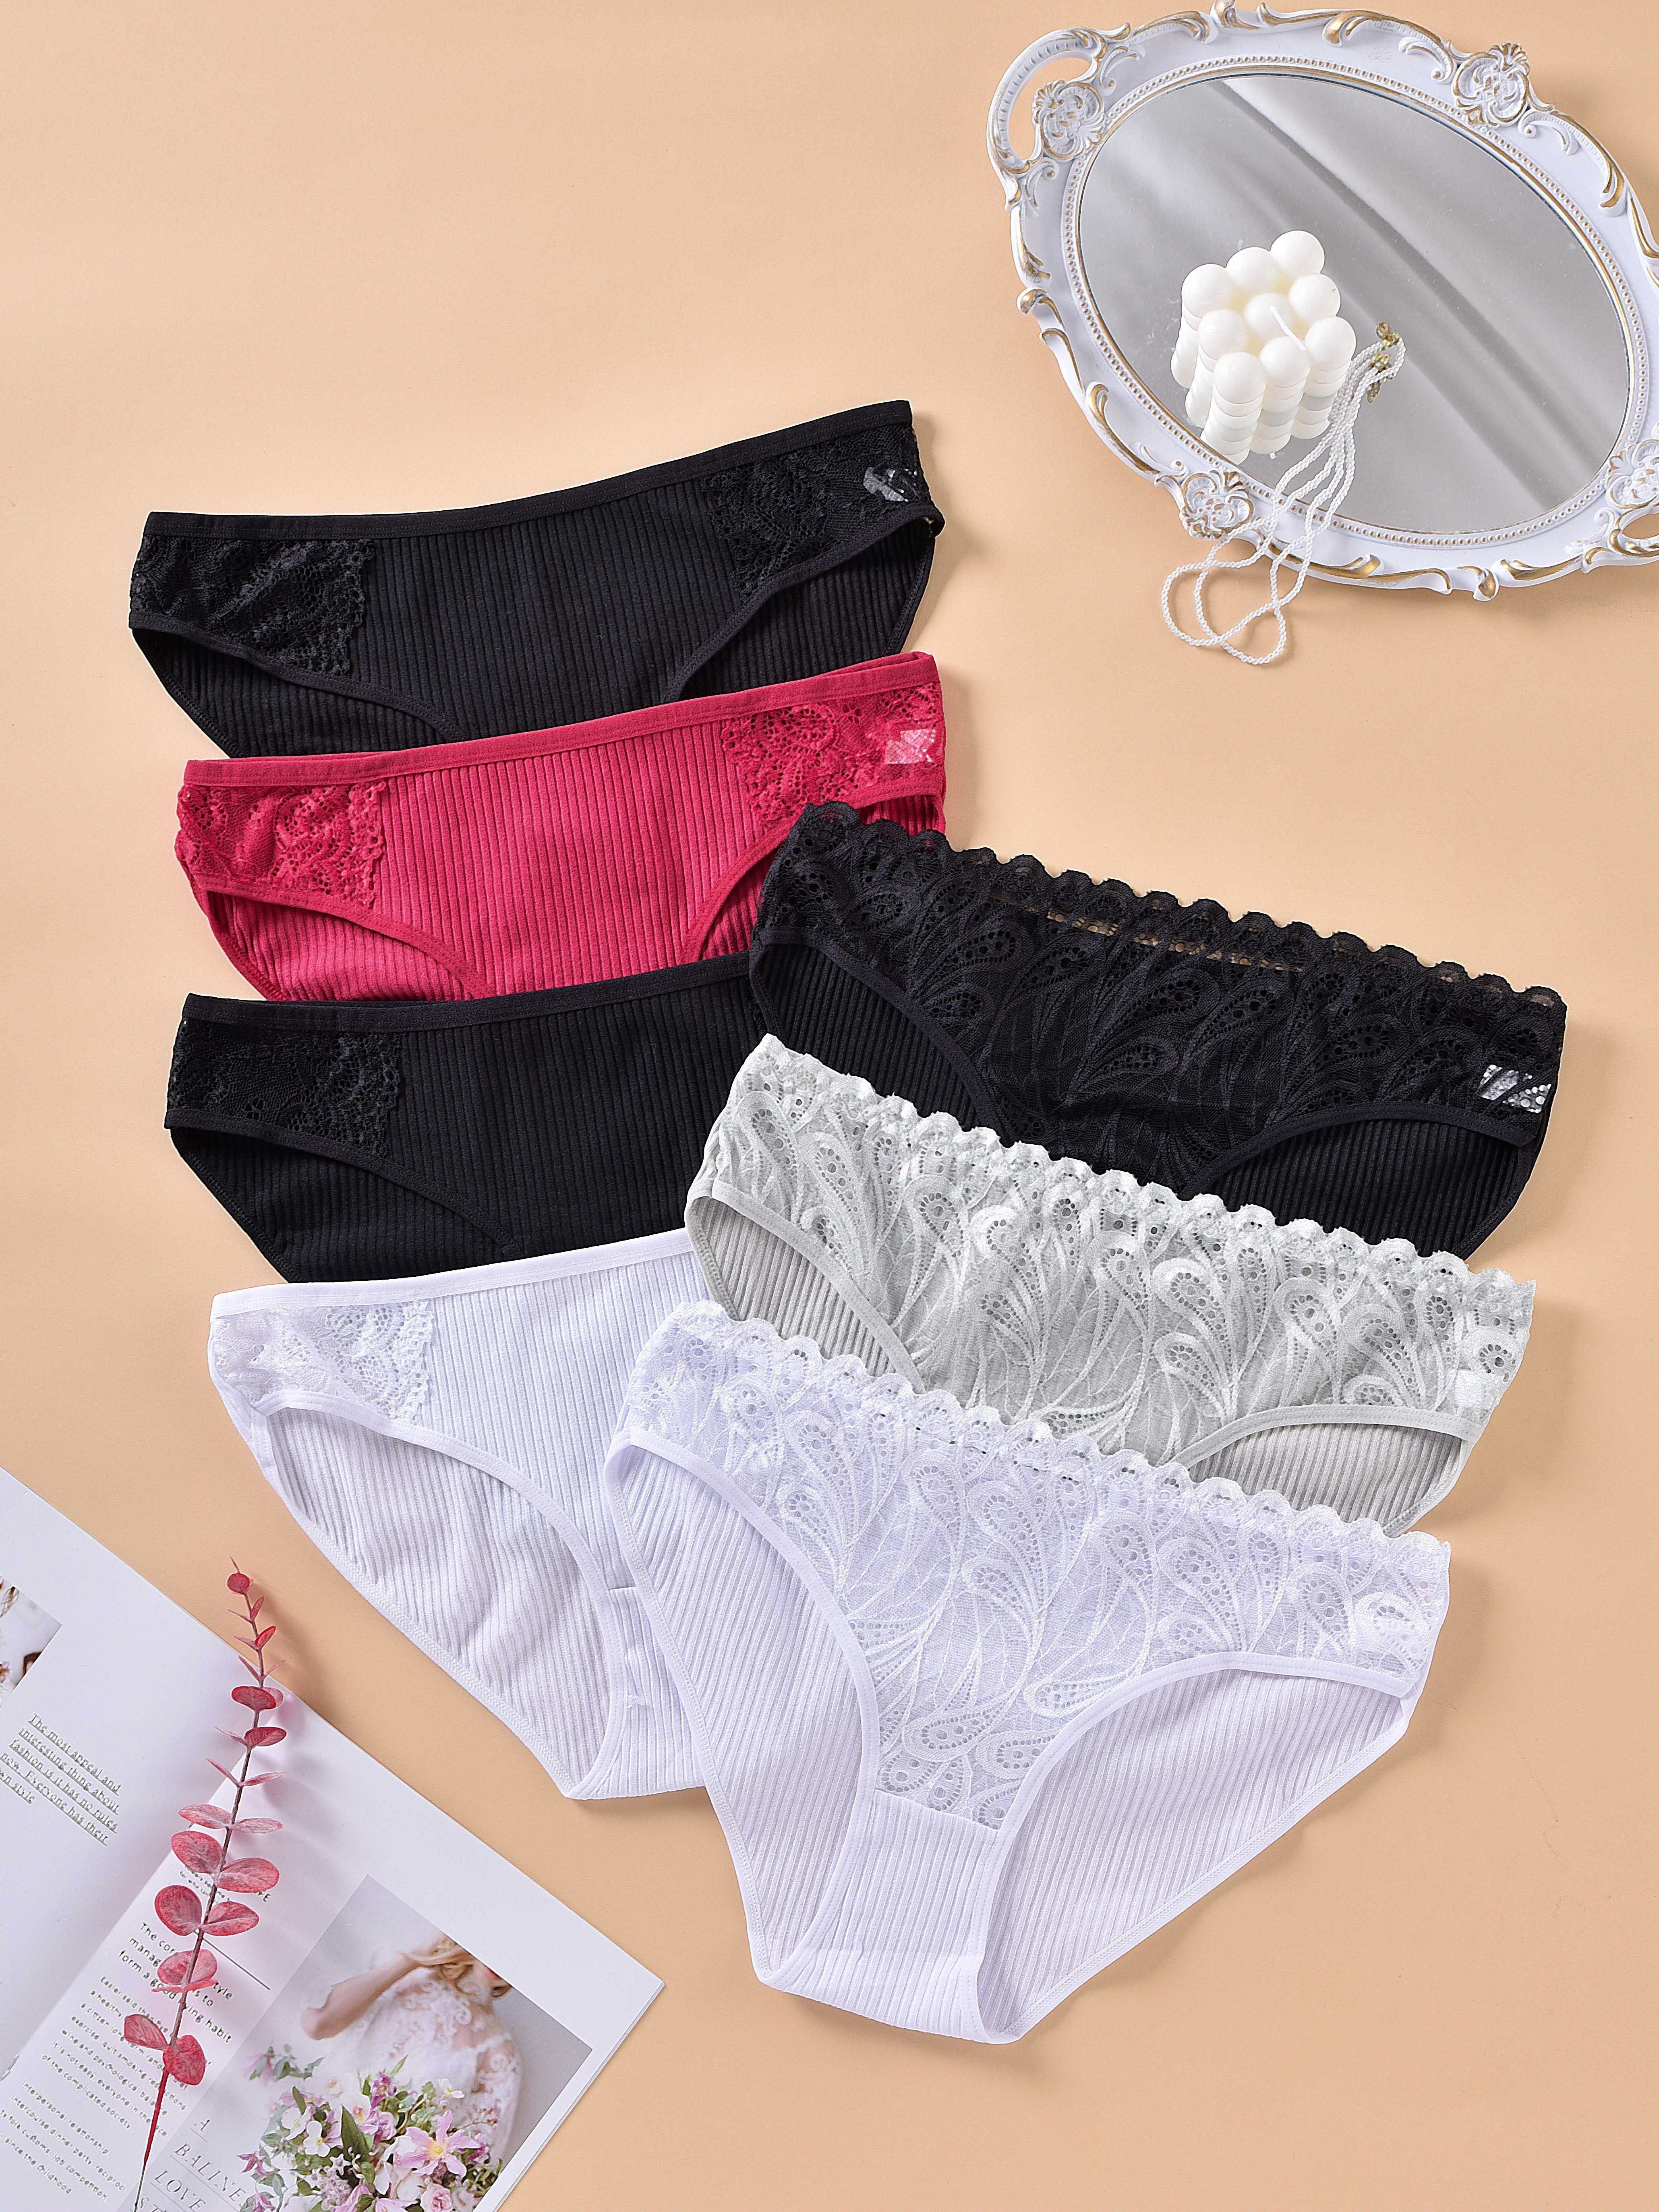 7Pack/Set High Waisted Cotton Underwear Ladies Soft Full Briefs